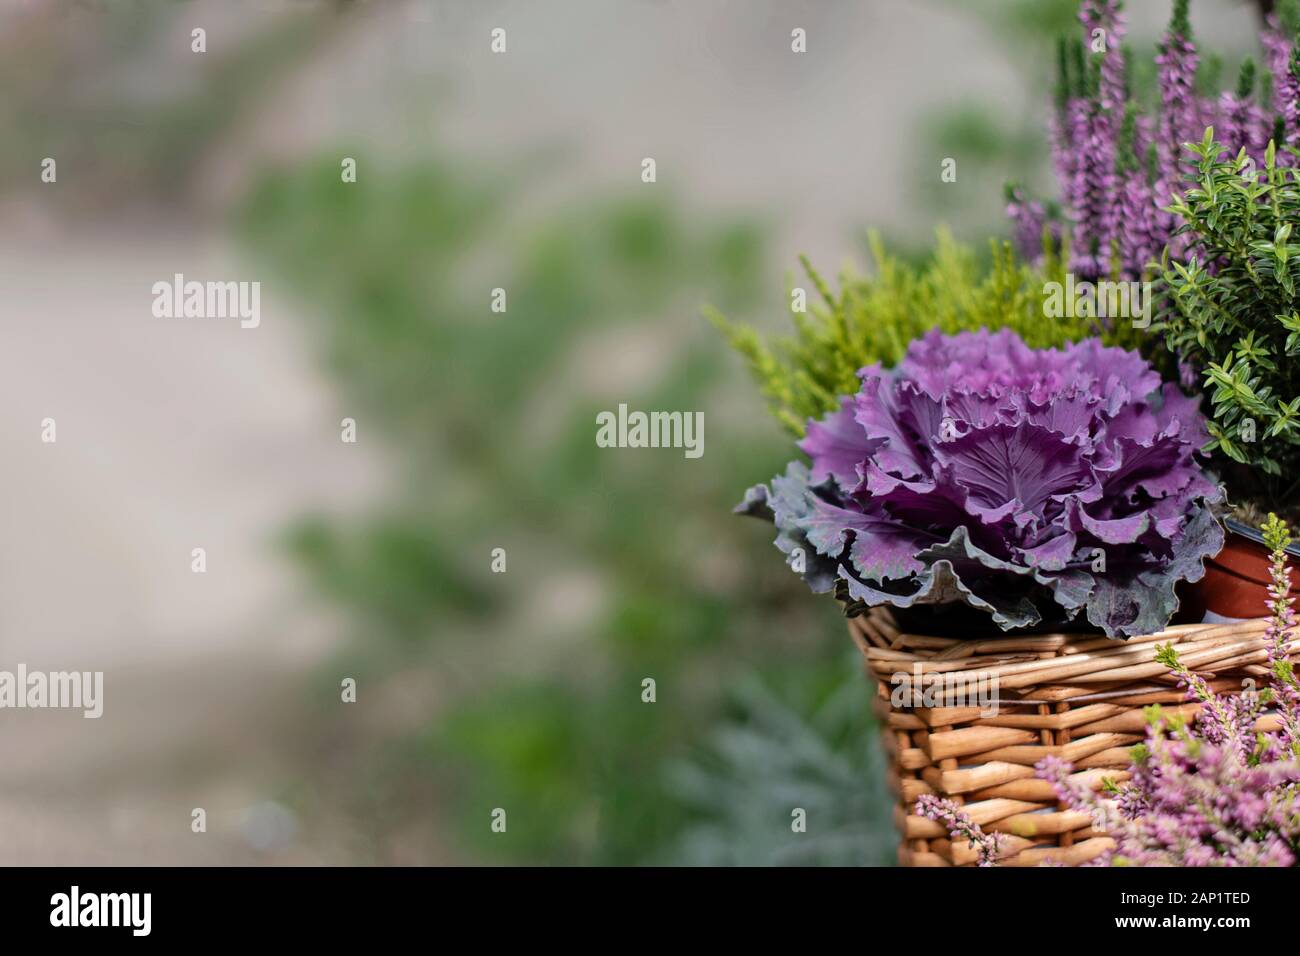 Herbst Dekoration Pflanzen Hintergrund. Frisches violett Zierpflanzen Kohl (Brassica oleracea) und Heidekraut (Calluna vulgris) Blüte im Decora Stockfoto